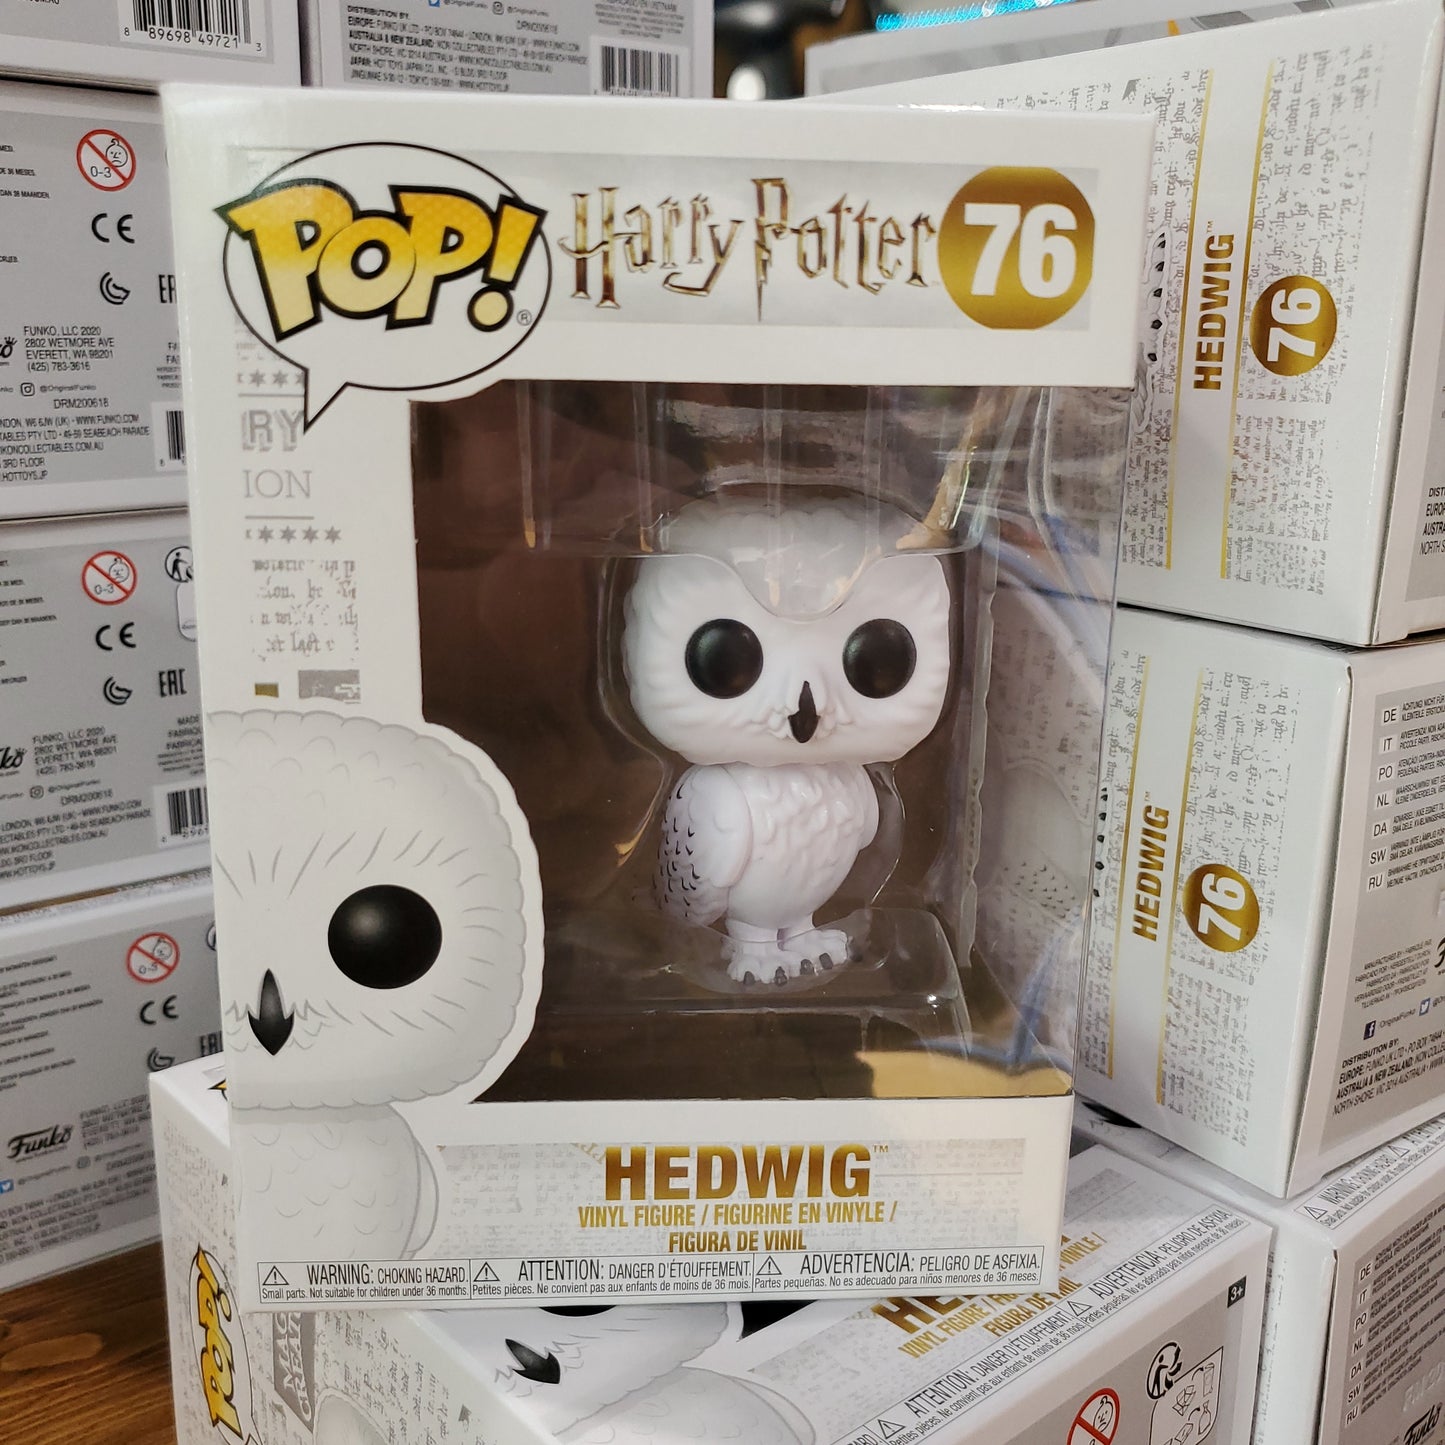 Harry Potter Hedwig 76 Funko Pop! Vinyl Figure